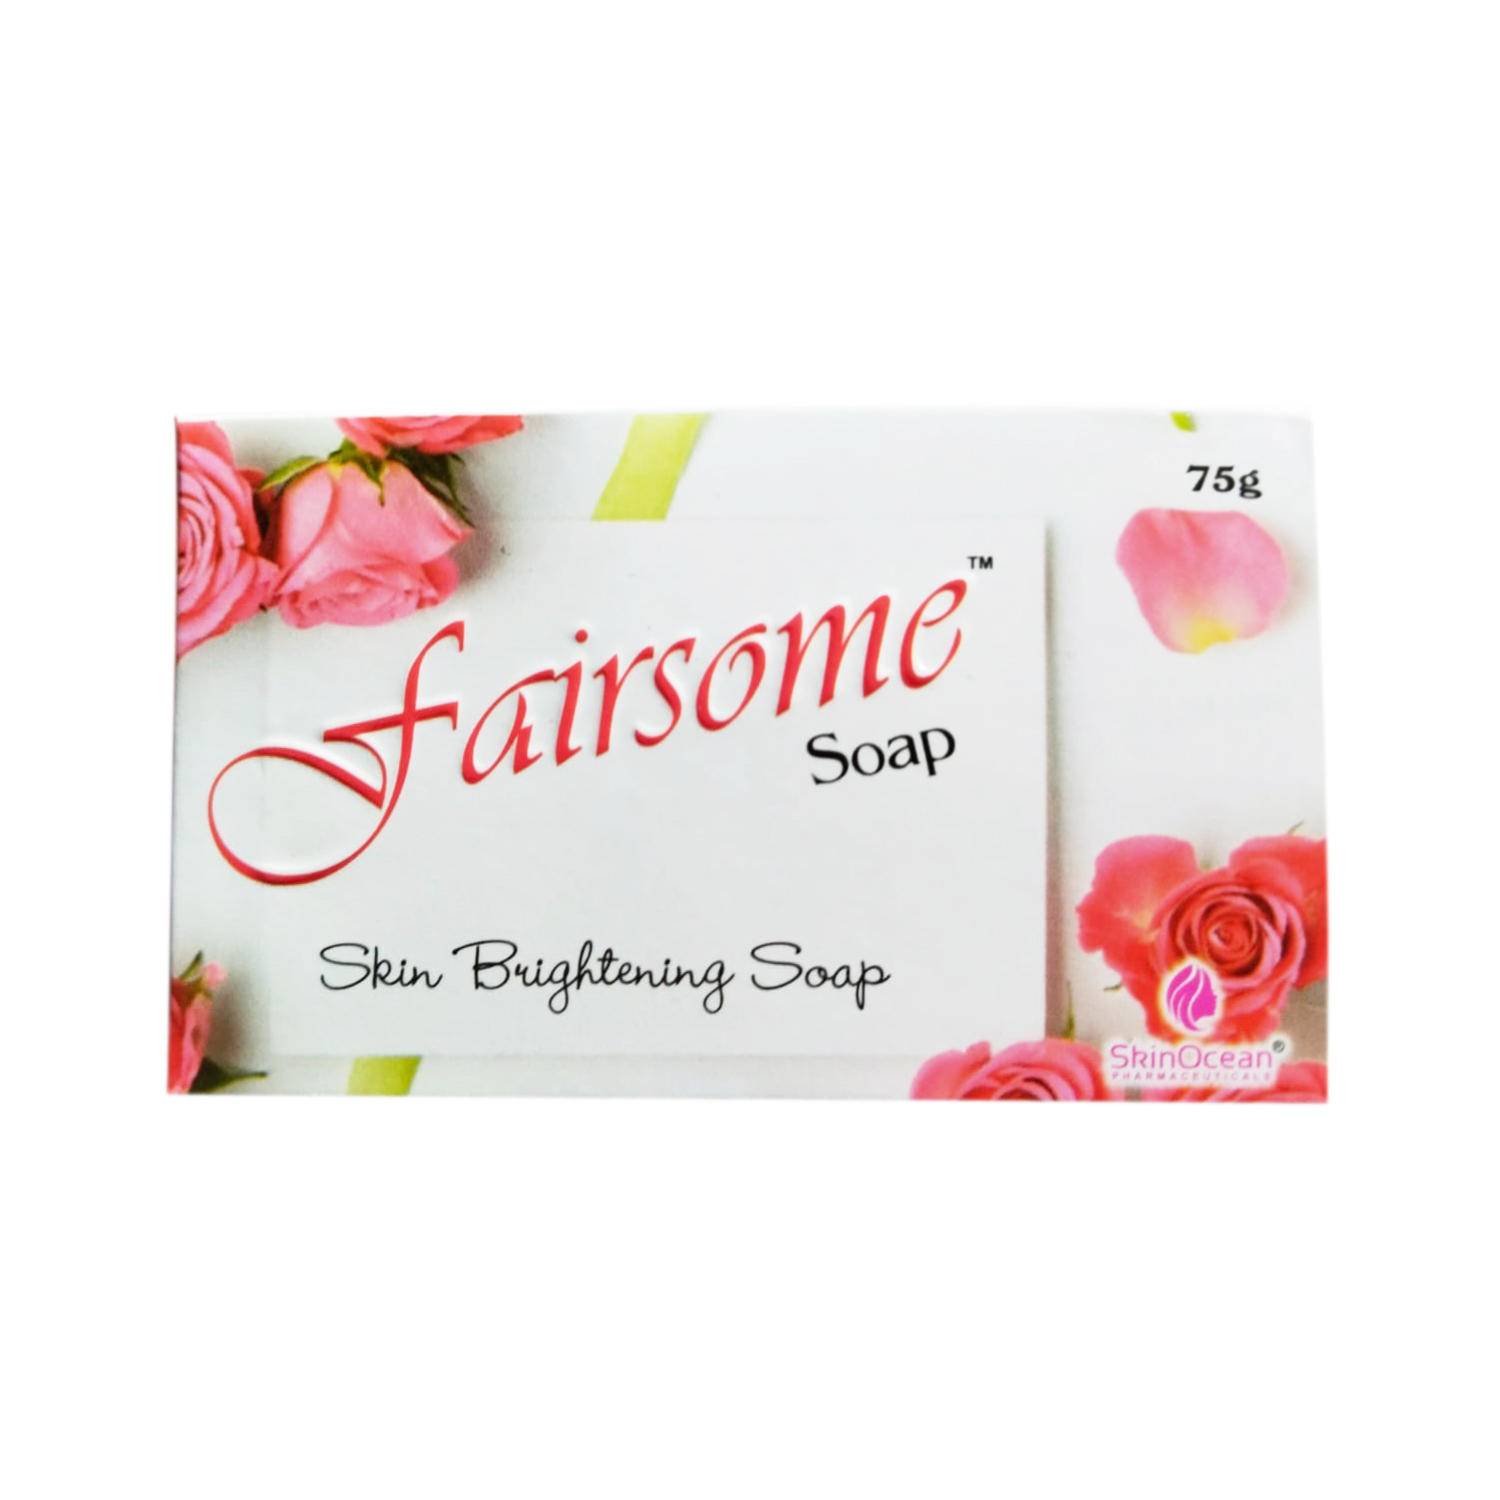 SkinOcean Fairsome Soap 75g